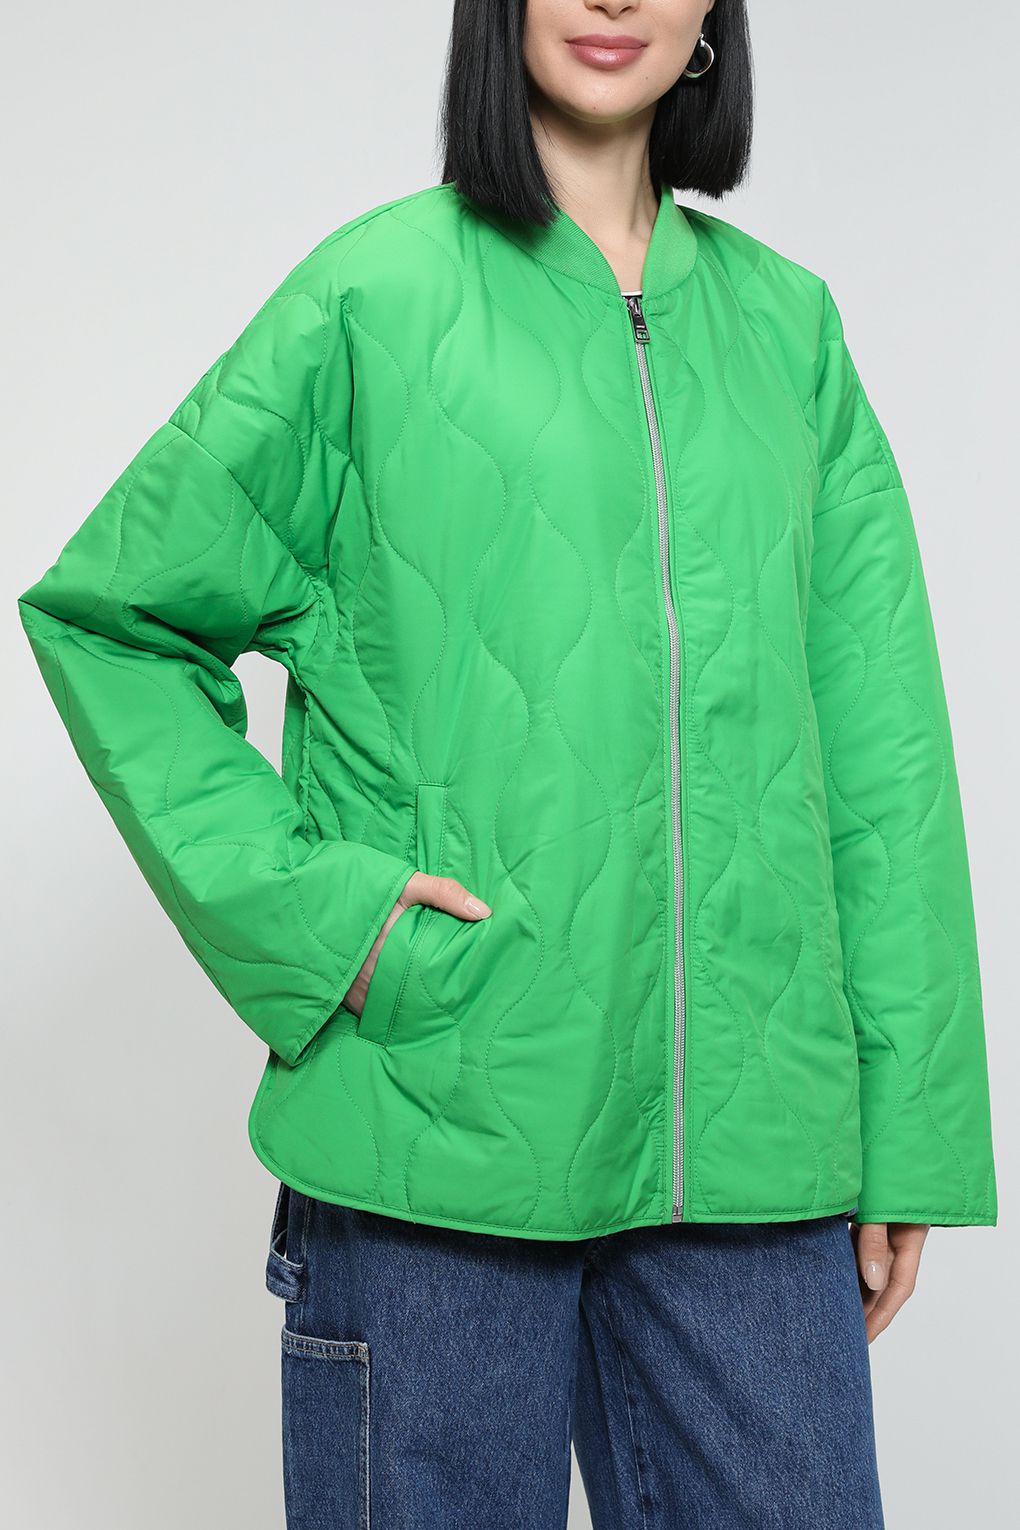 

Куртка женская Esprit Casual 013EE1G366 зеленая L, Зеленый, 013EE1G366